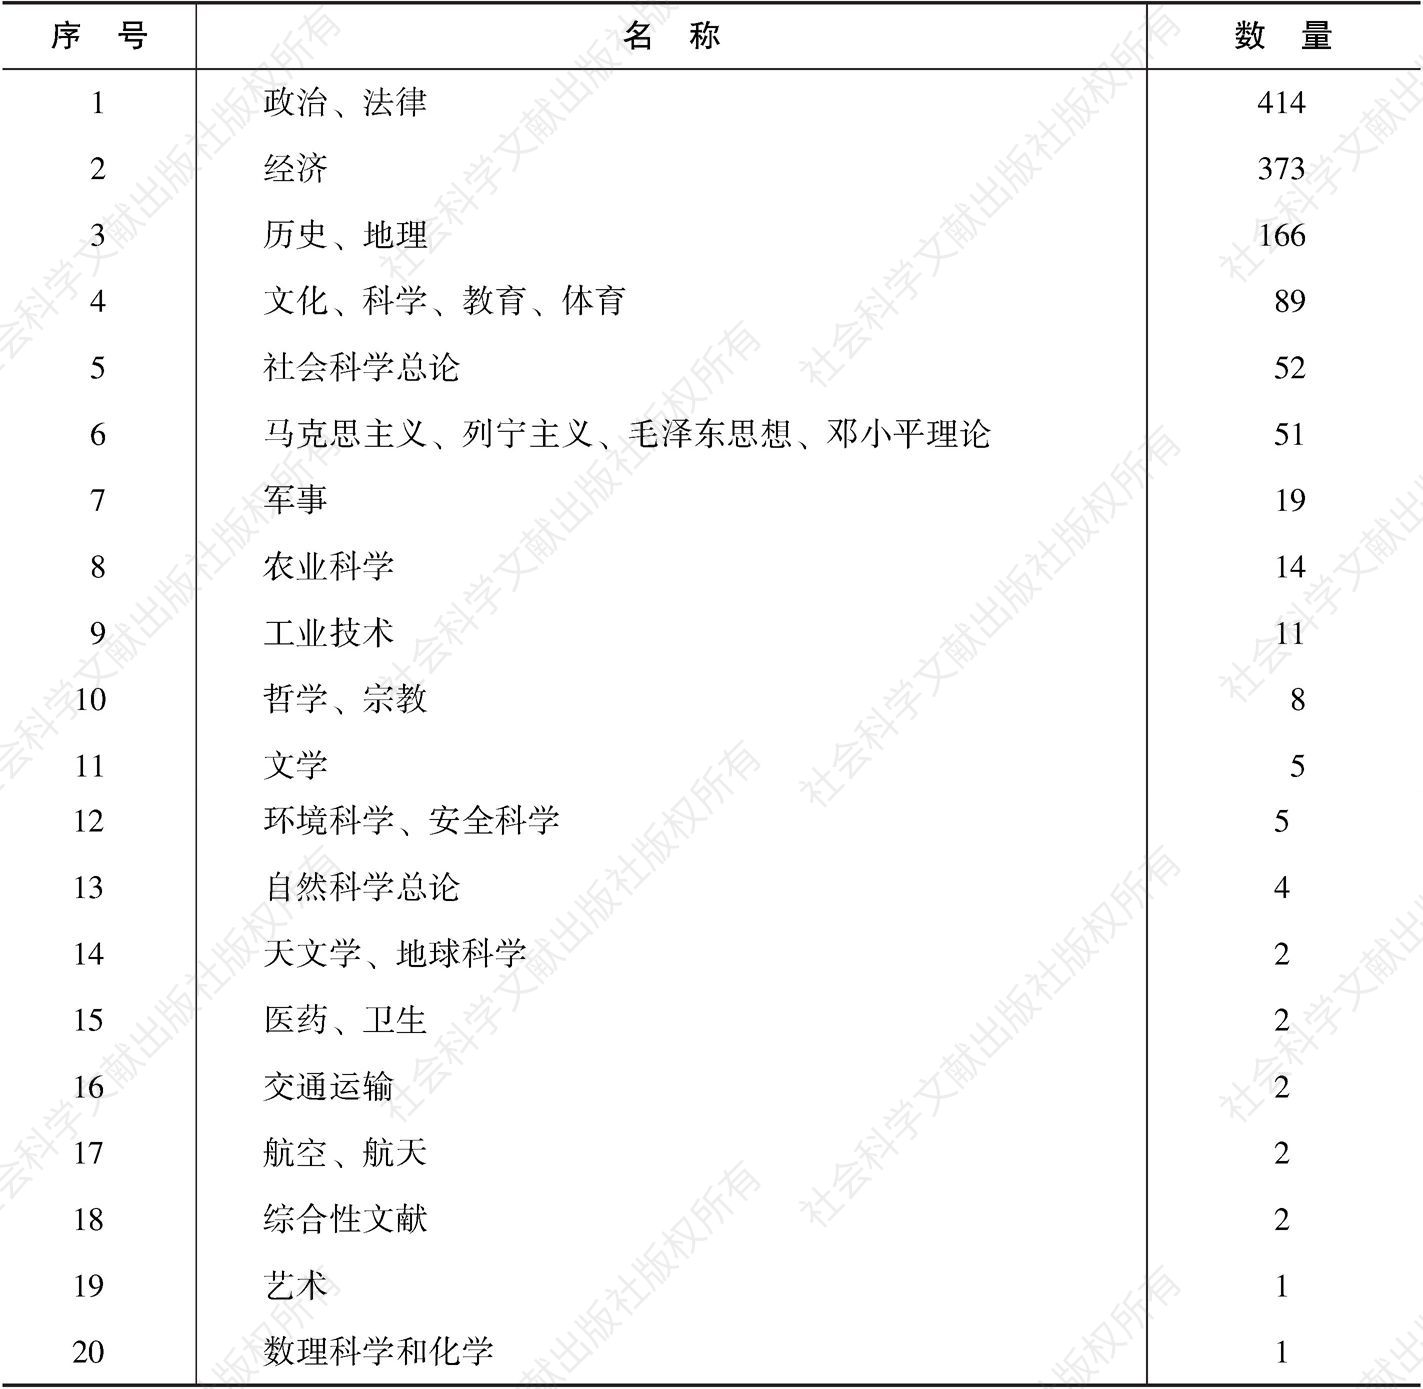 表0-2 中央苏区党领导的经济建设-中文学科分类统计